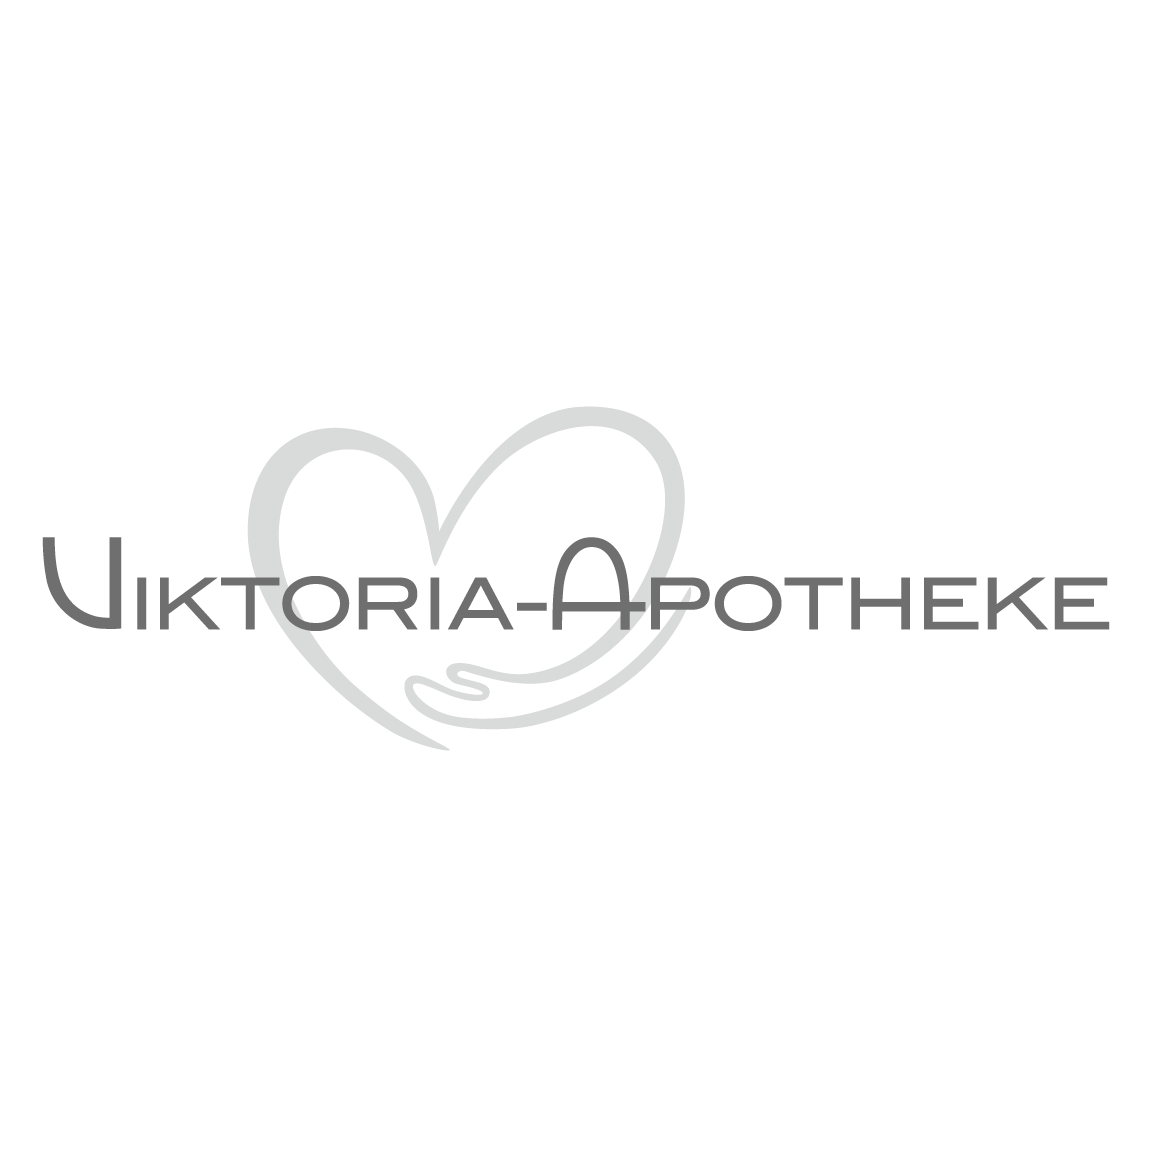 Viktoria-Apotheke  